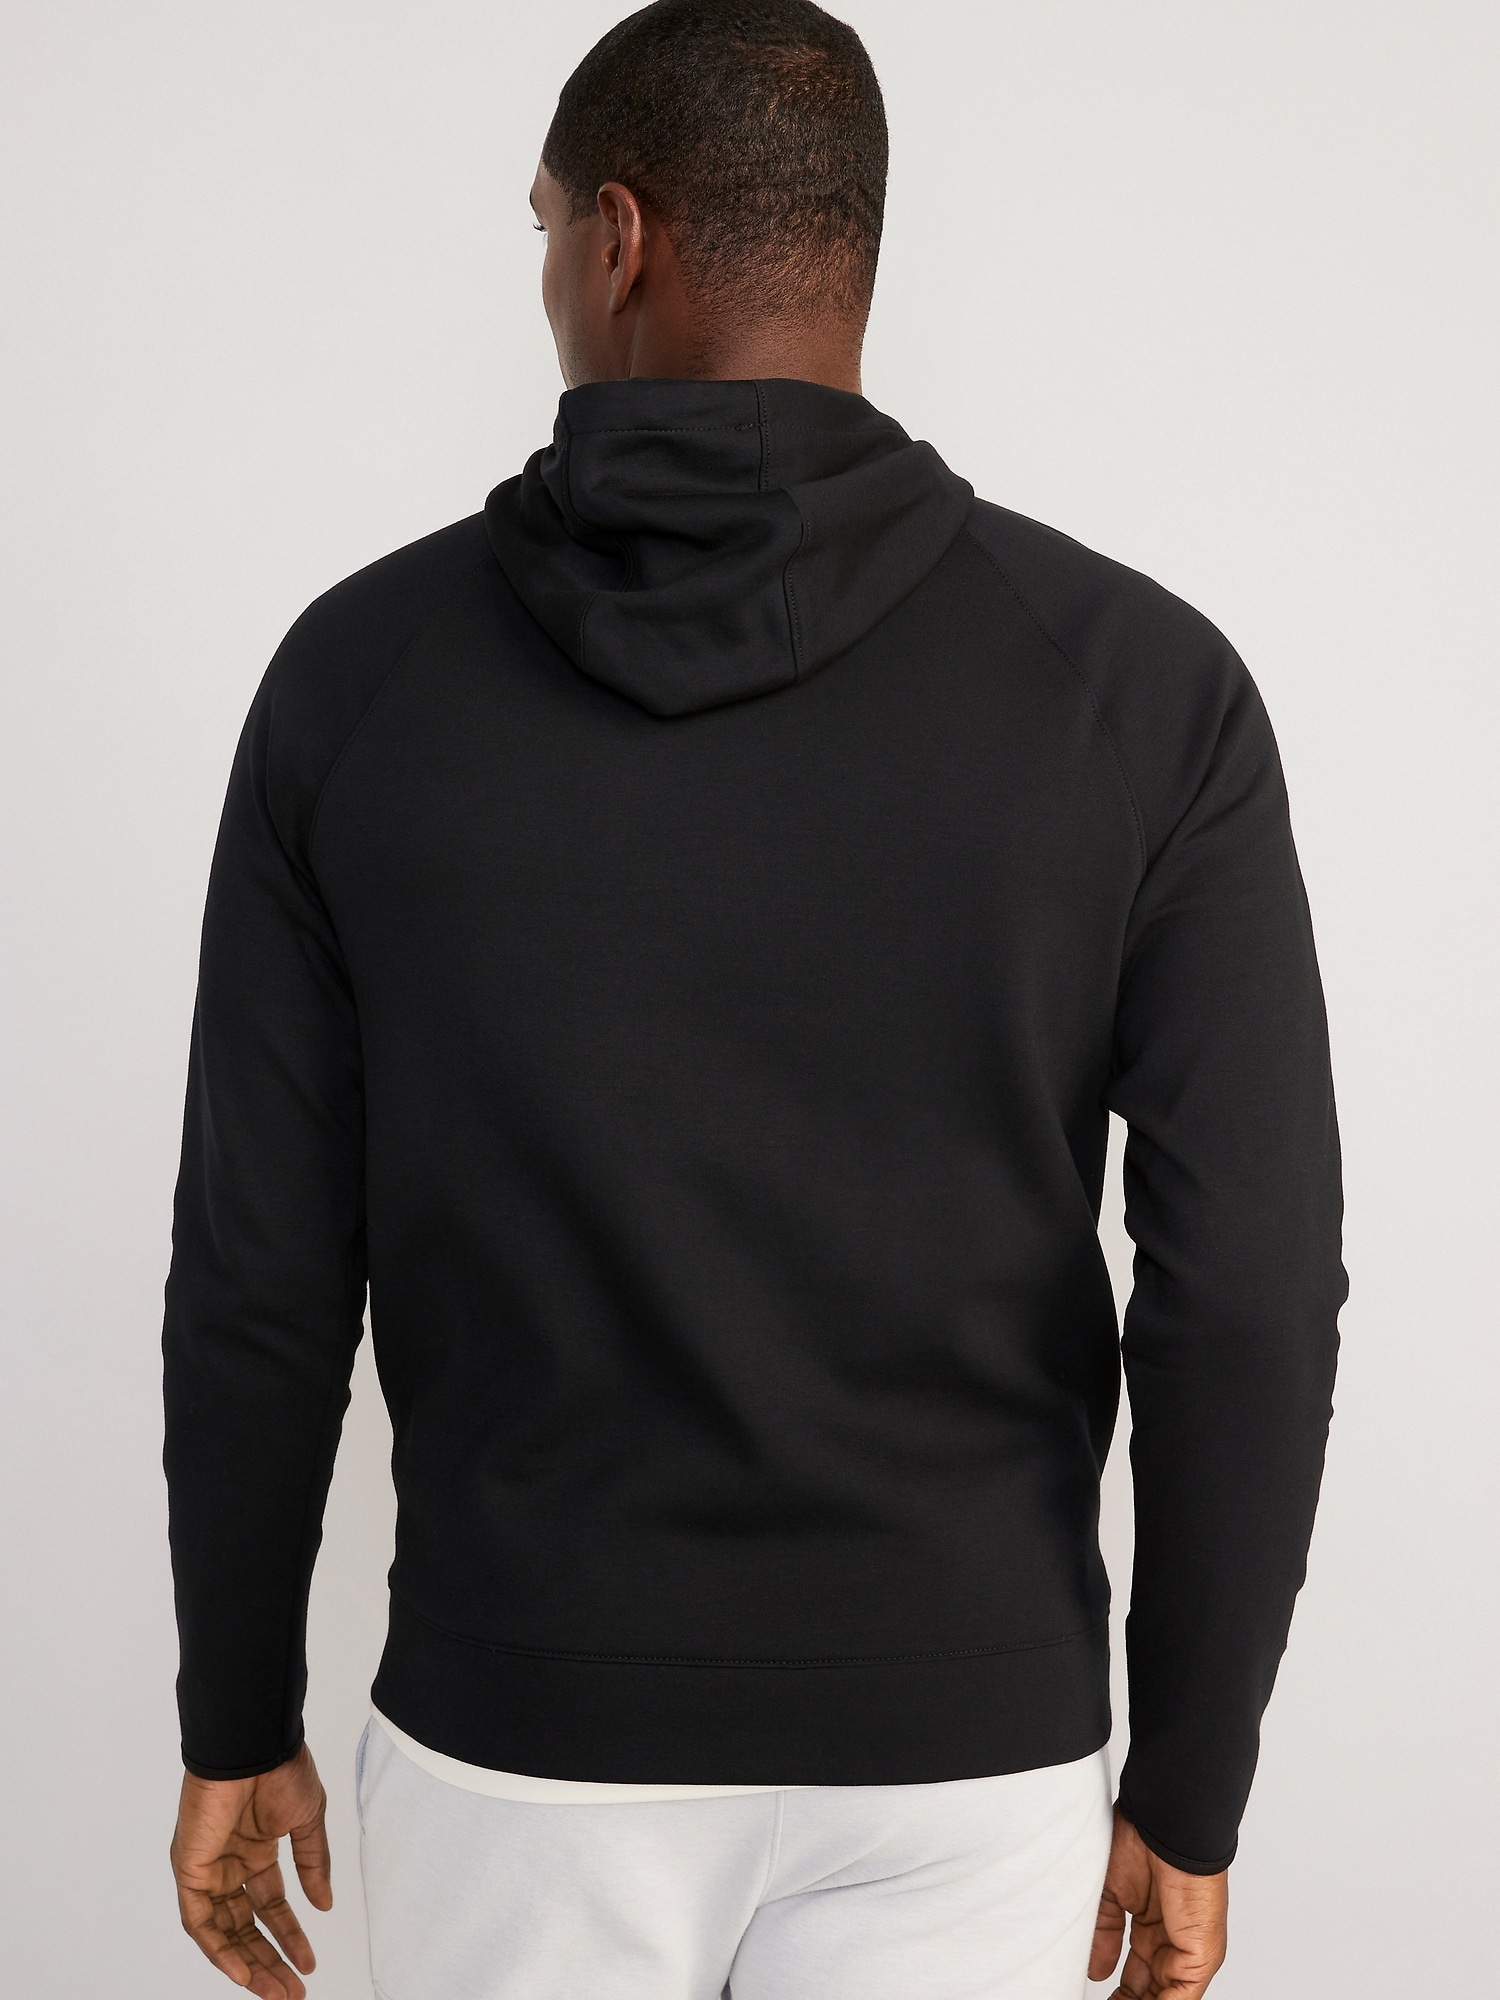 Nike Sportswear Tech Fleece Full-Zip Hoodie Mustard/Grey/Black Men's - US